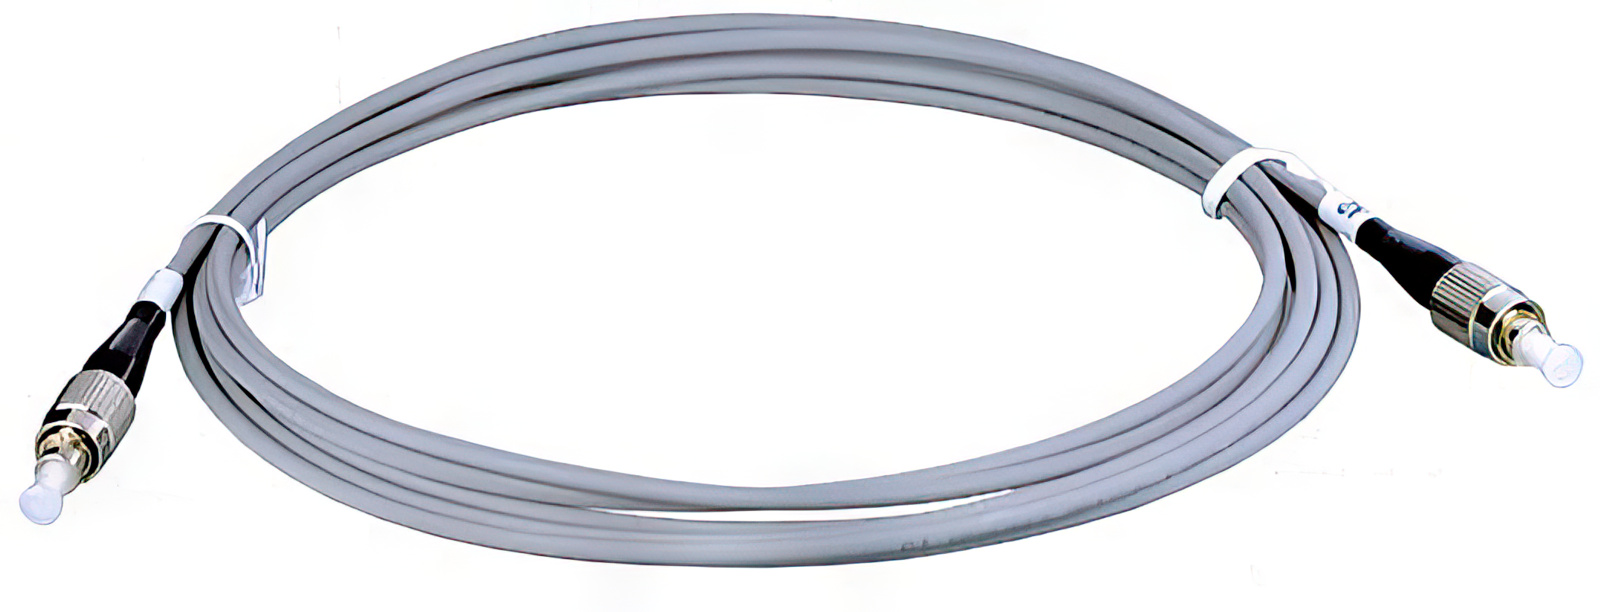 3m optisches Sat-Kabel Global Invacom Fibre F122 Single Kabel Länge: 3 m Verbindungskabel vorkonfektioniert mit 2 x FC/PC Stecker